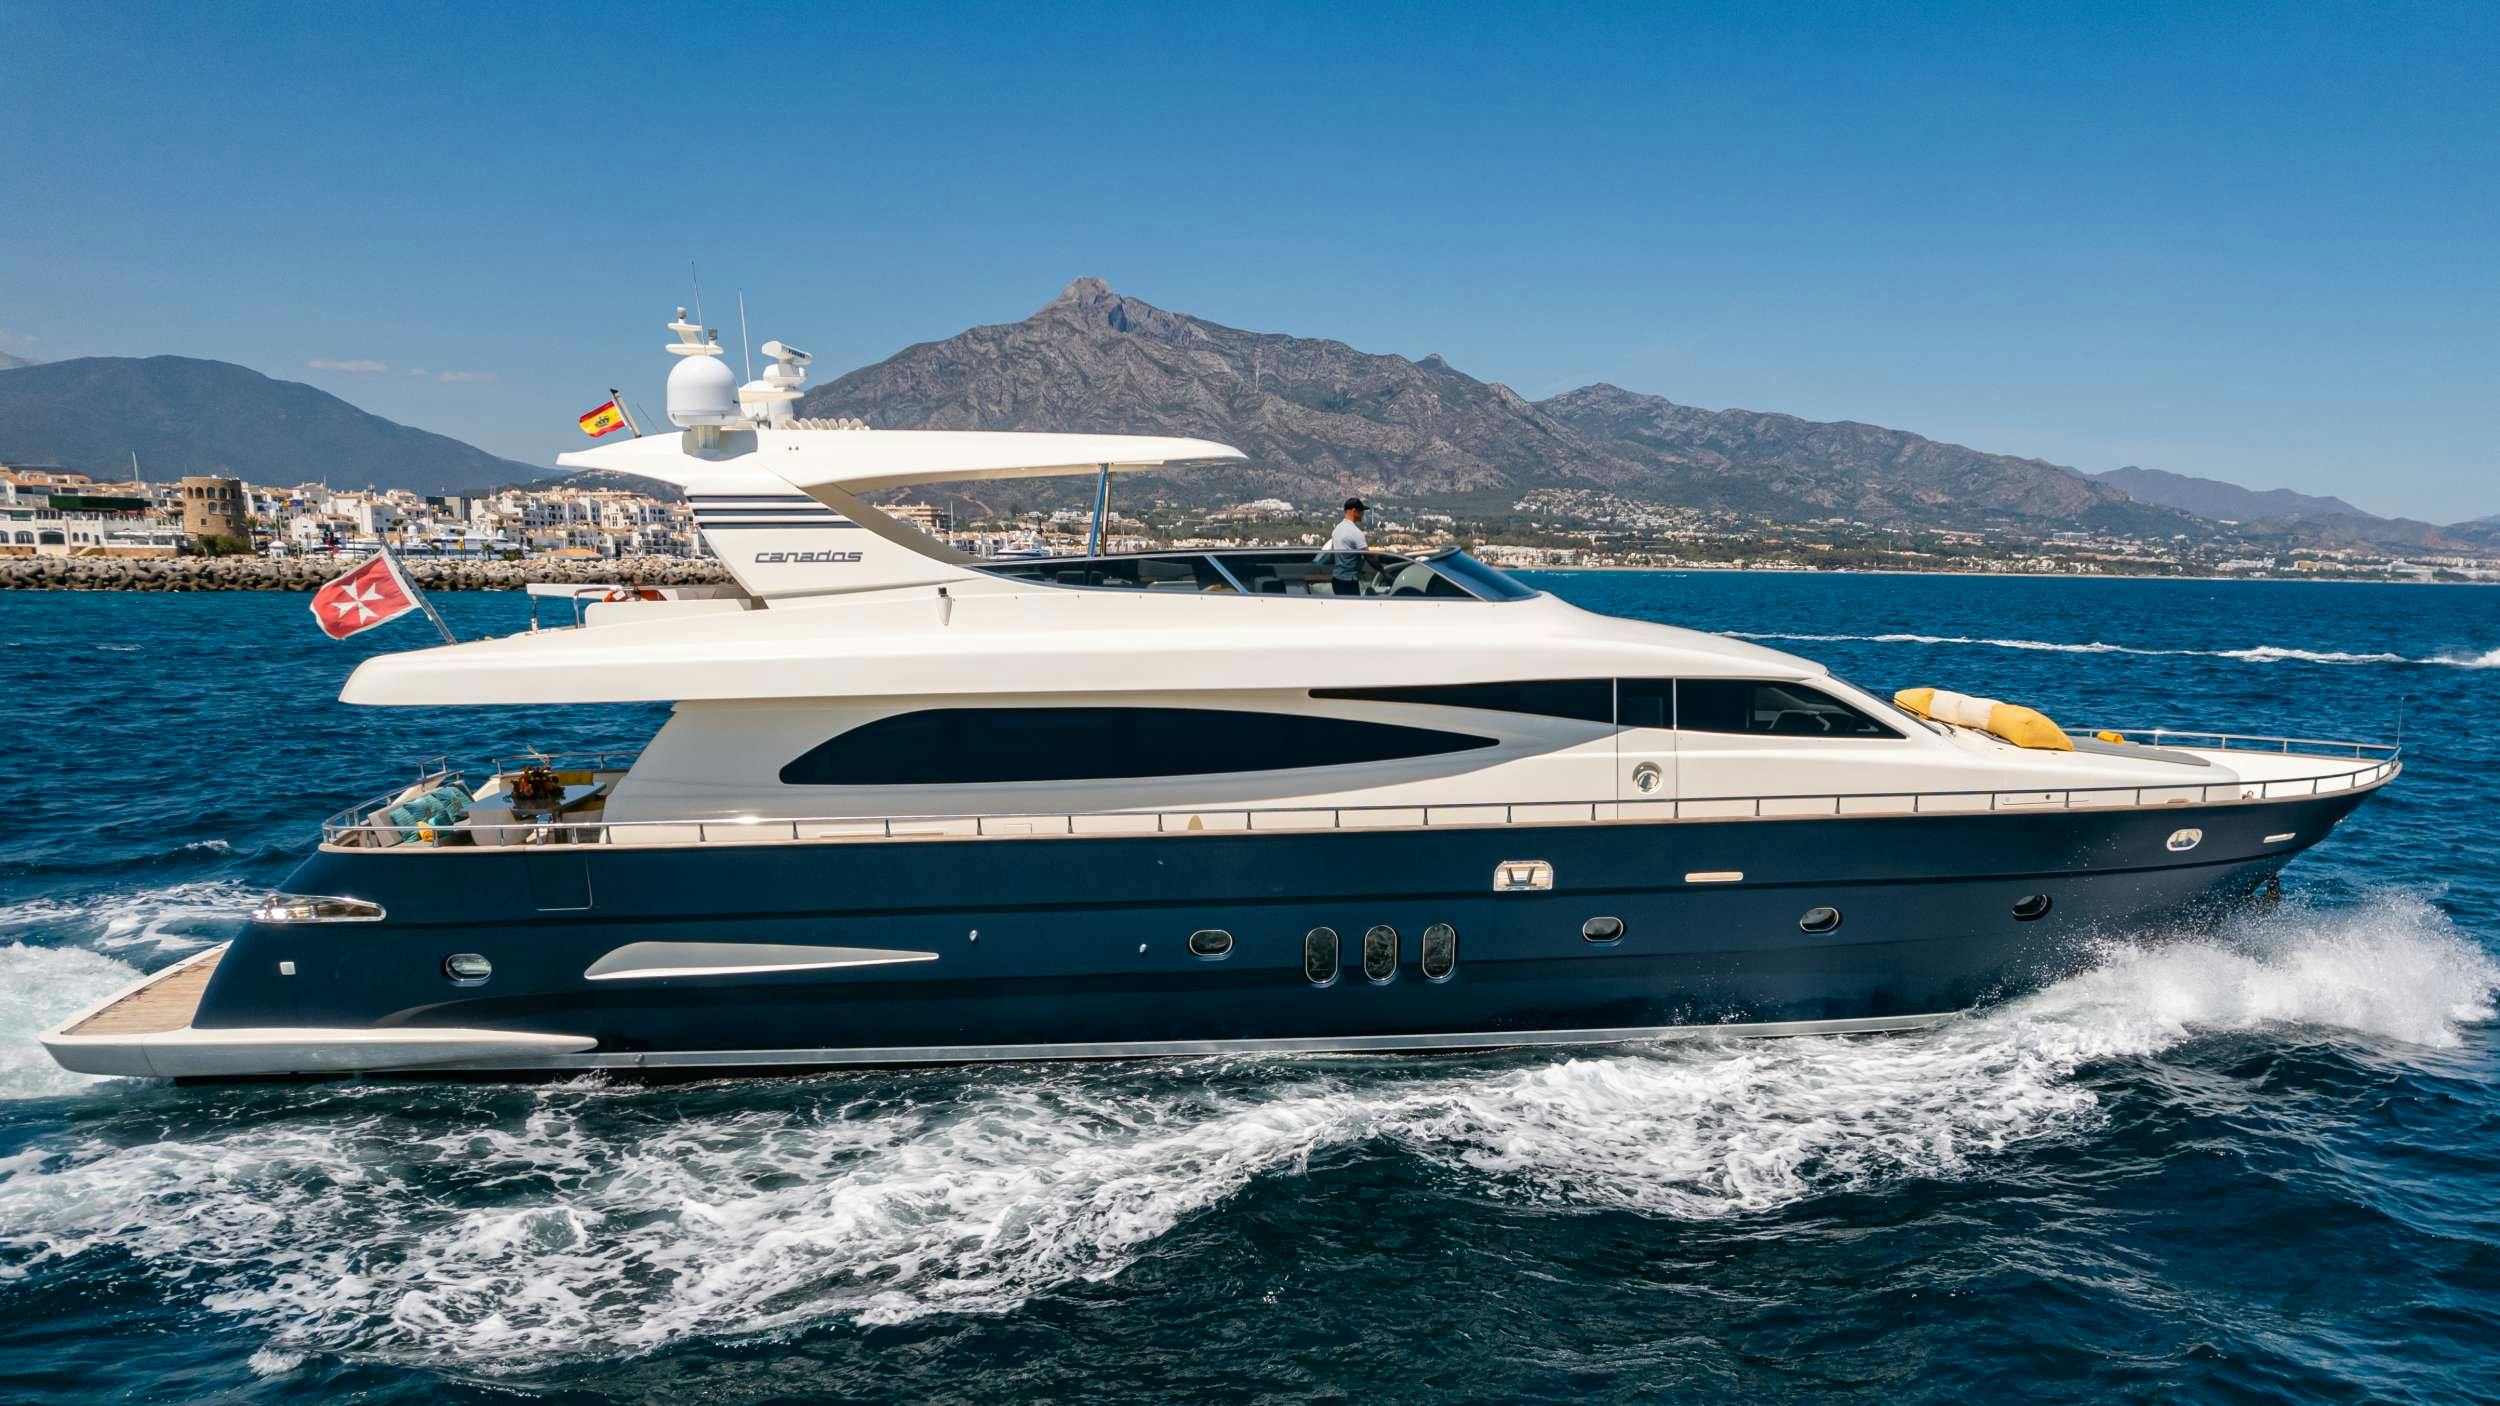 Fourteen - Yacht Charter Mallorca & Boat hire in Balearics & Spain 1